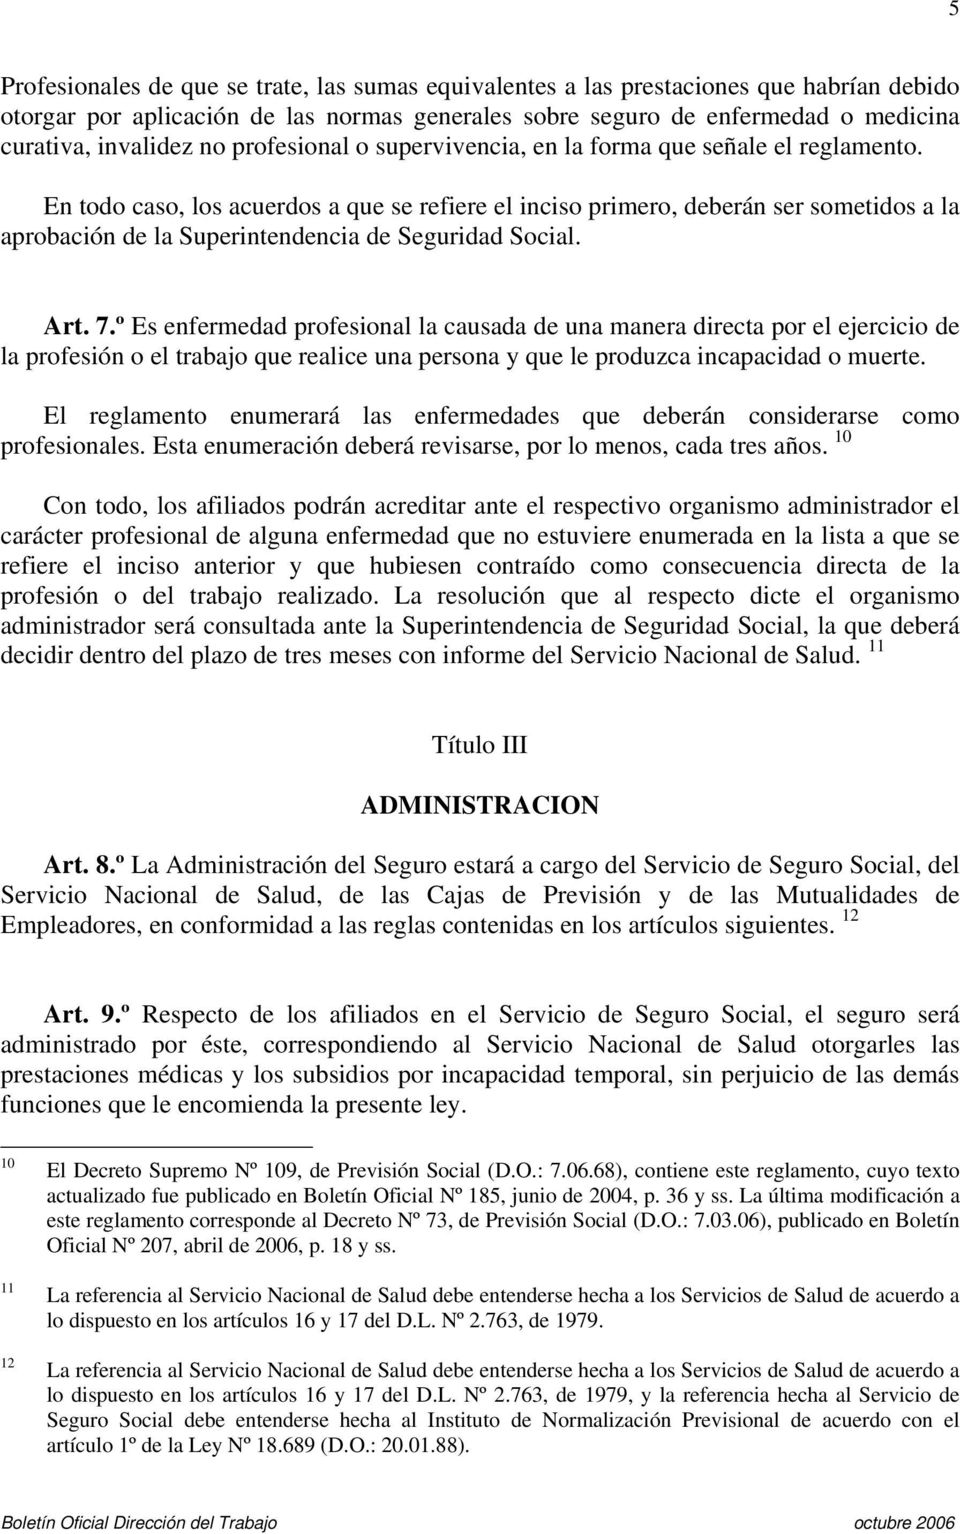 En todo caso, los acuerdos a que se refiere el inciso primero, deberán ser sometidos a la aprobación de la Superintendencia de Seguridad Social. Art. 7.